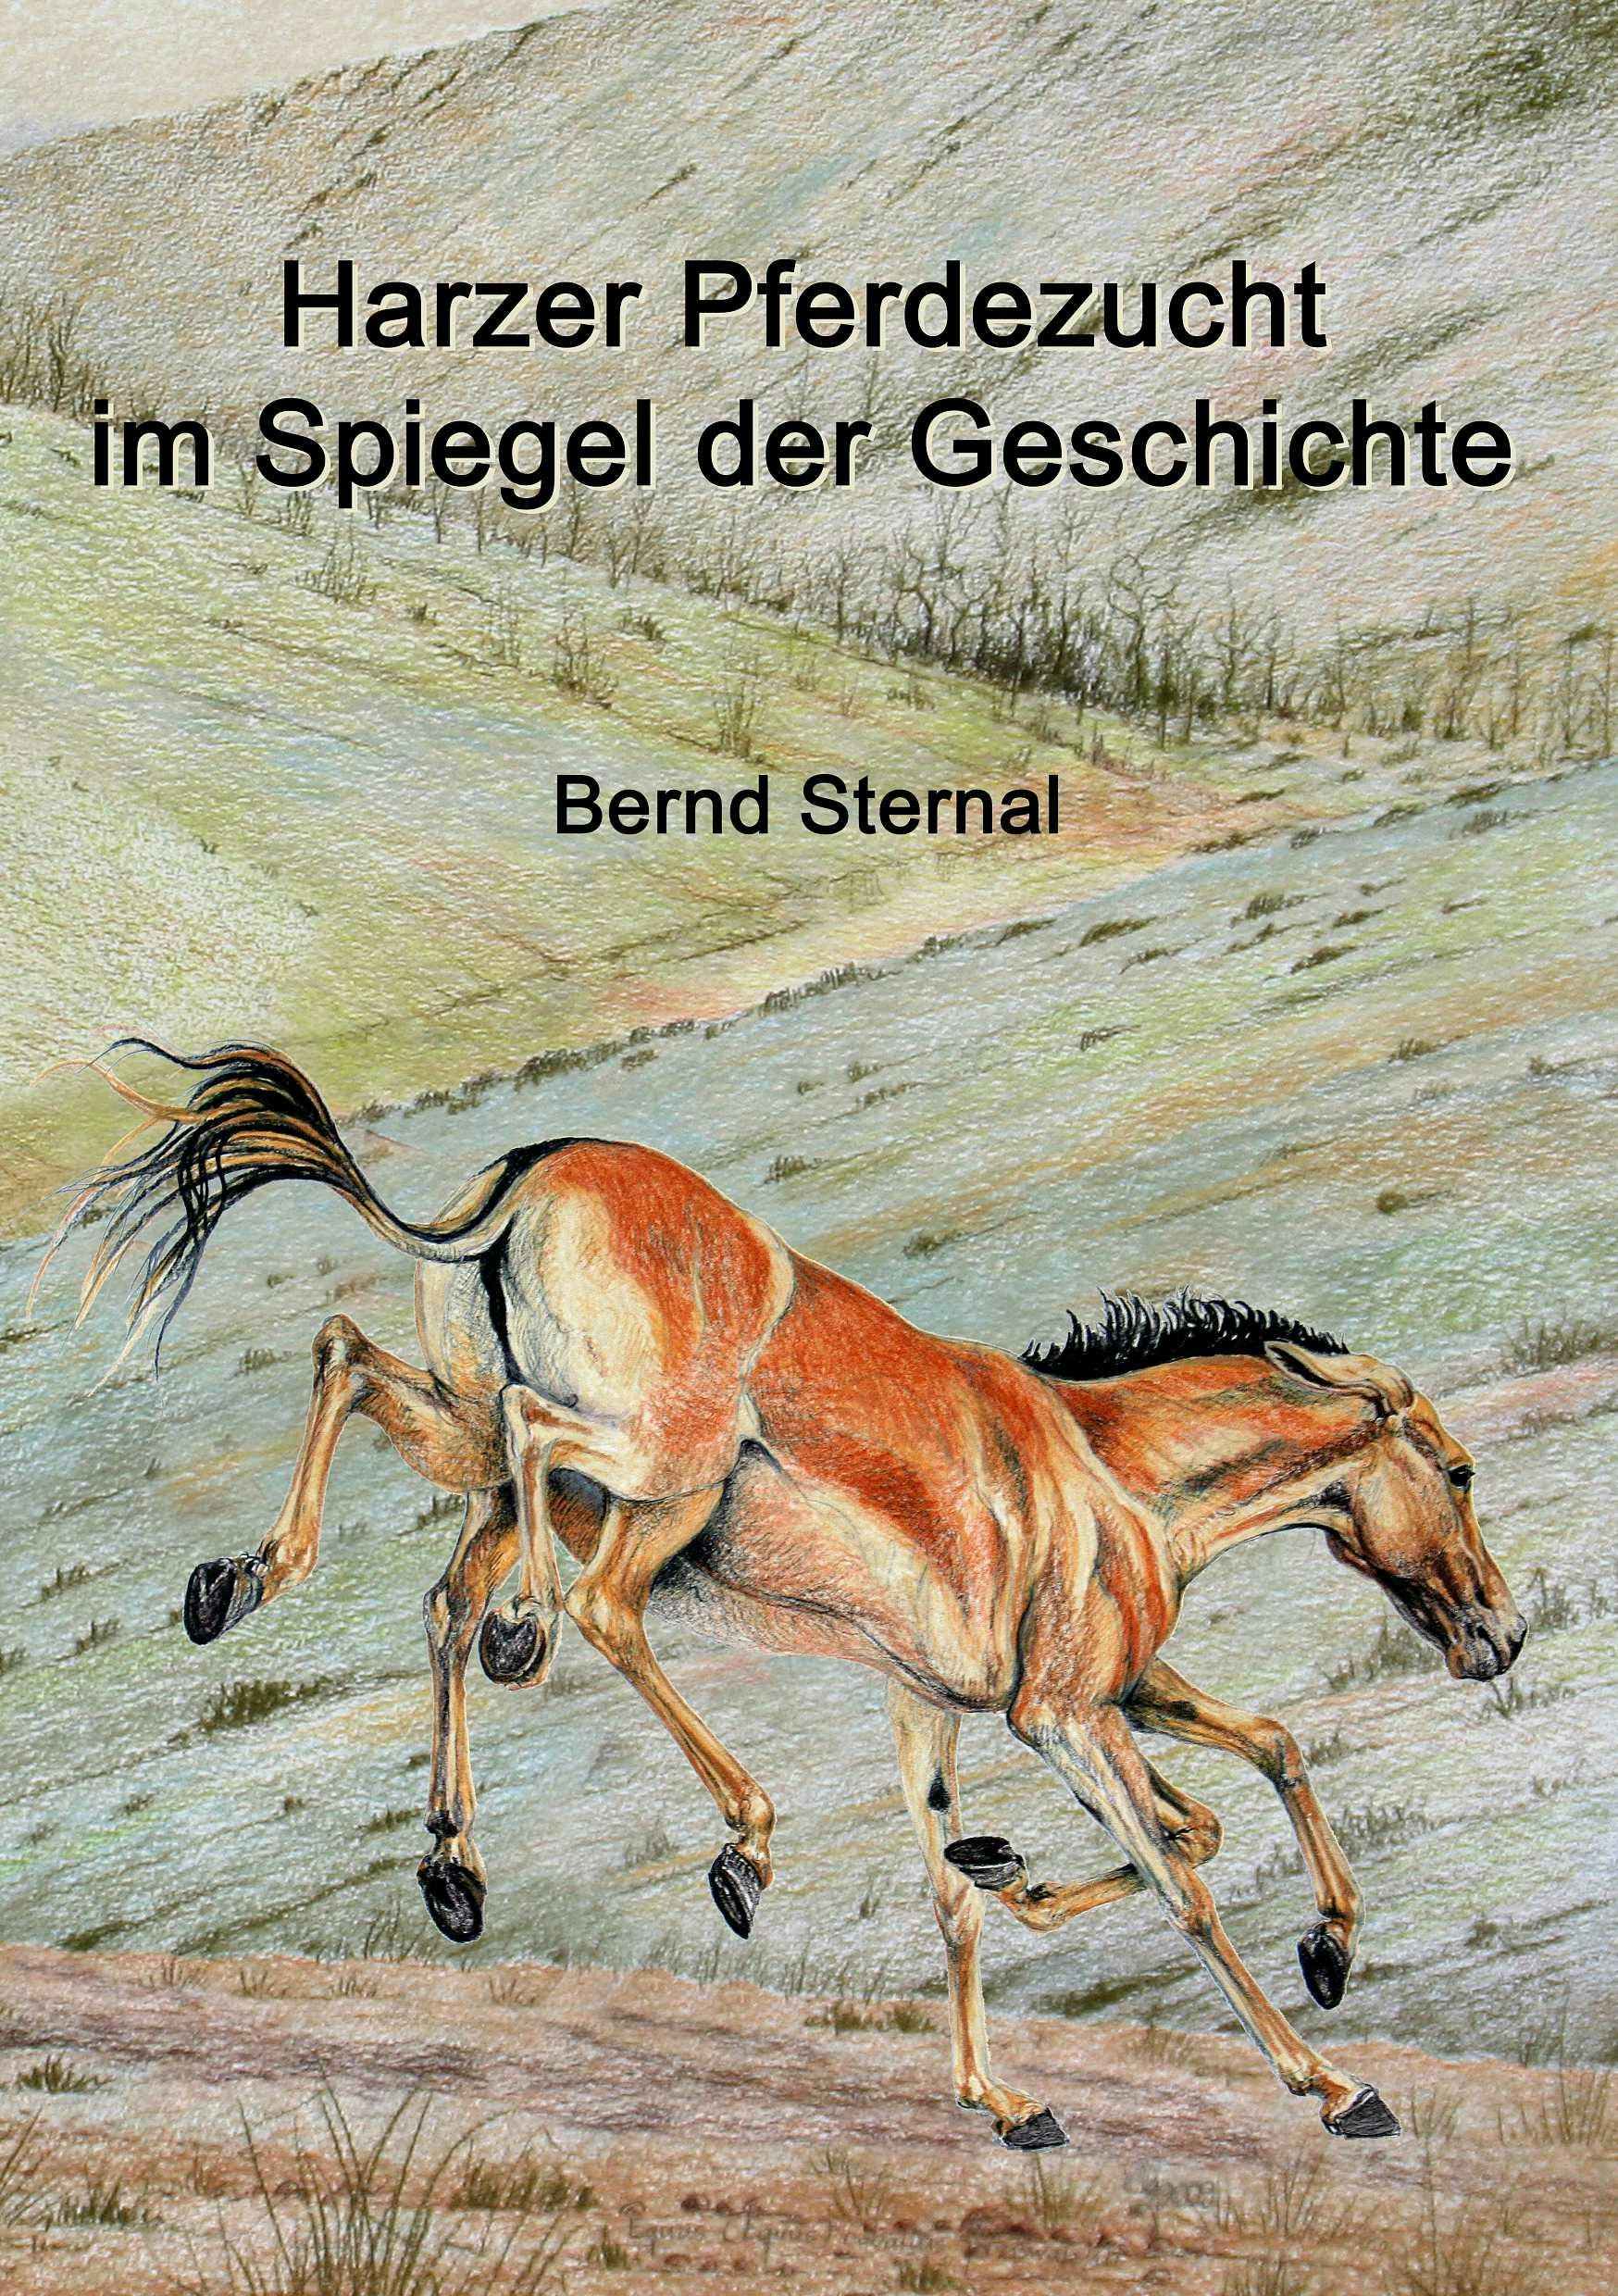 Harzer Pferdezucht im Spiegel der Geschichte - Bernd Sternal